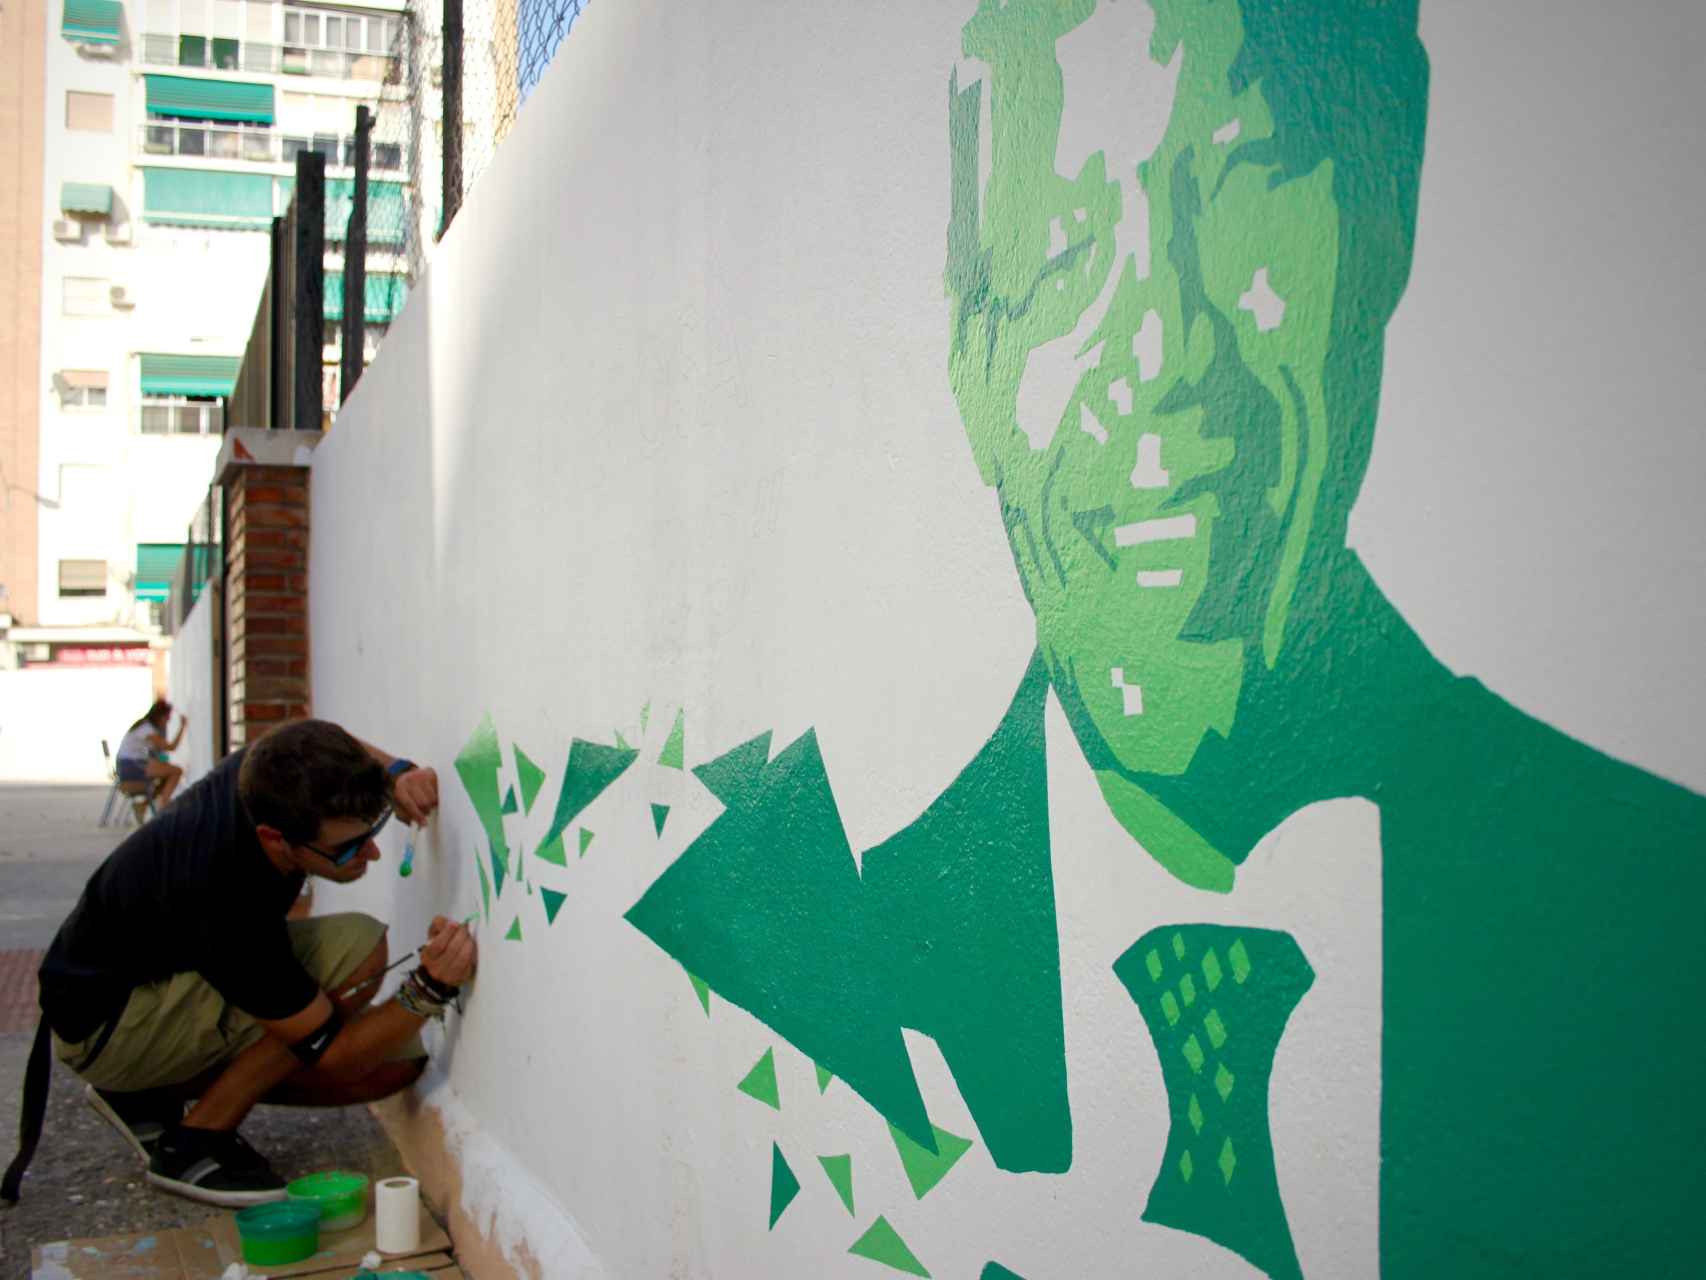 Uno de los implicados en el proyecto pintando a Nelson Mandela.